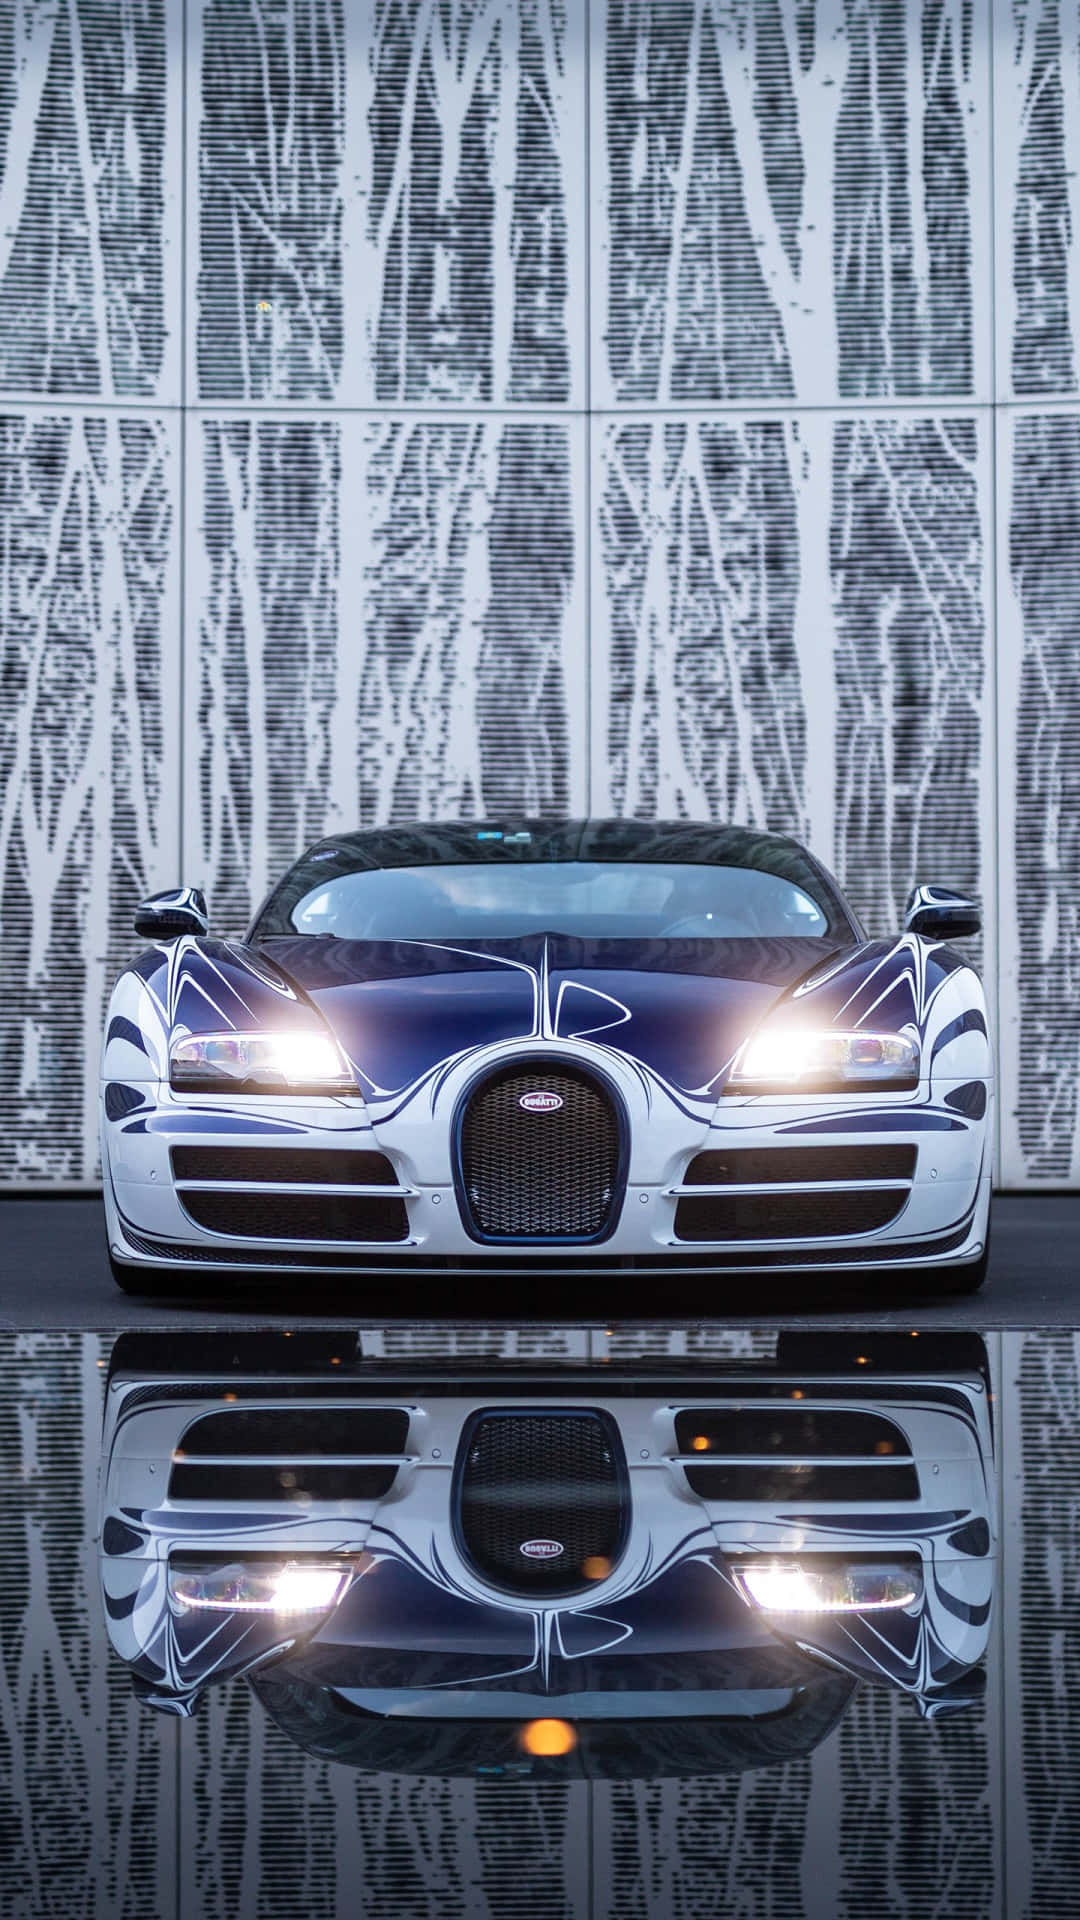 Enrikligt Förtjänad Lyx: Den Magnifika Bugattibilen. Wallpaper